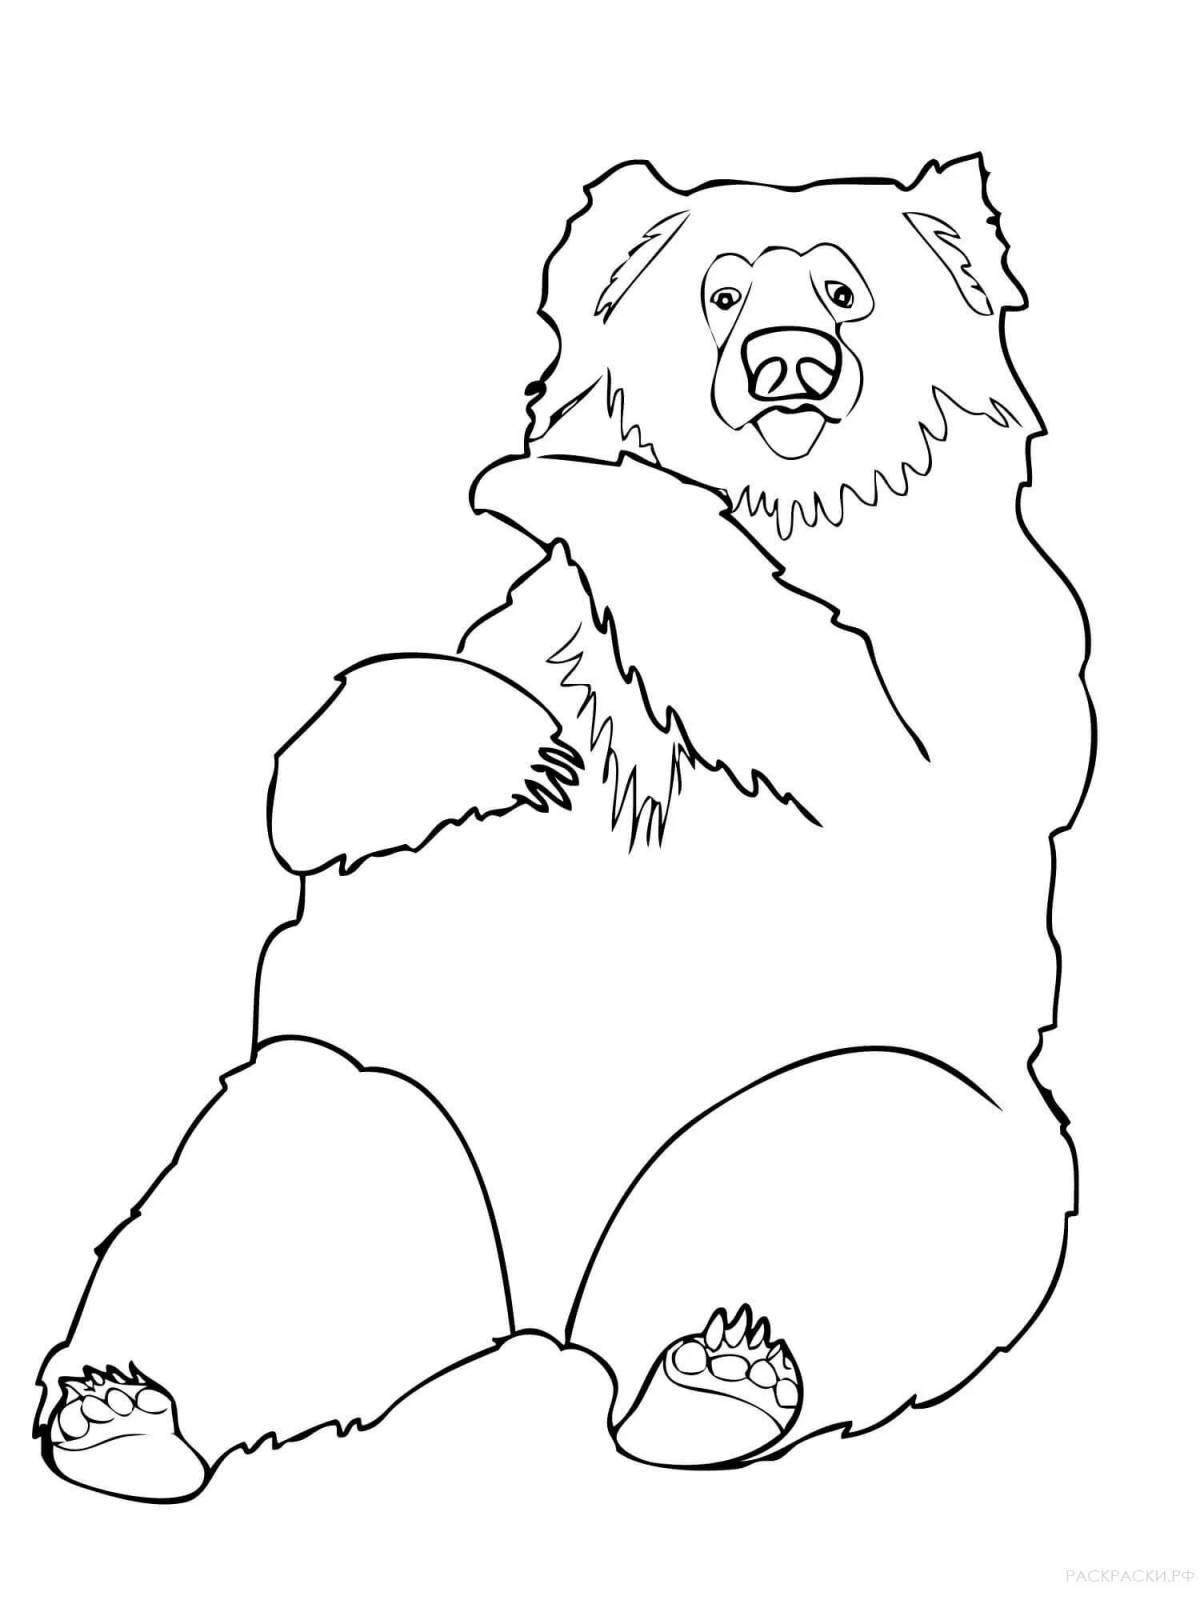 Анимированная страница раскраски гималайского медведя